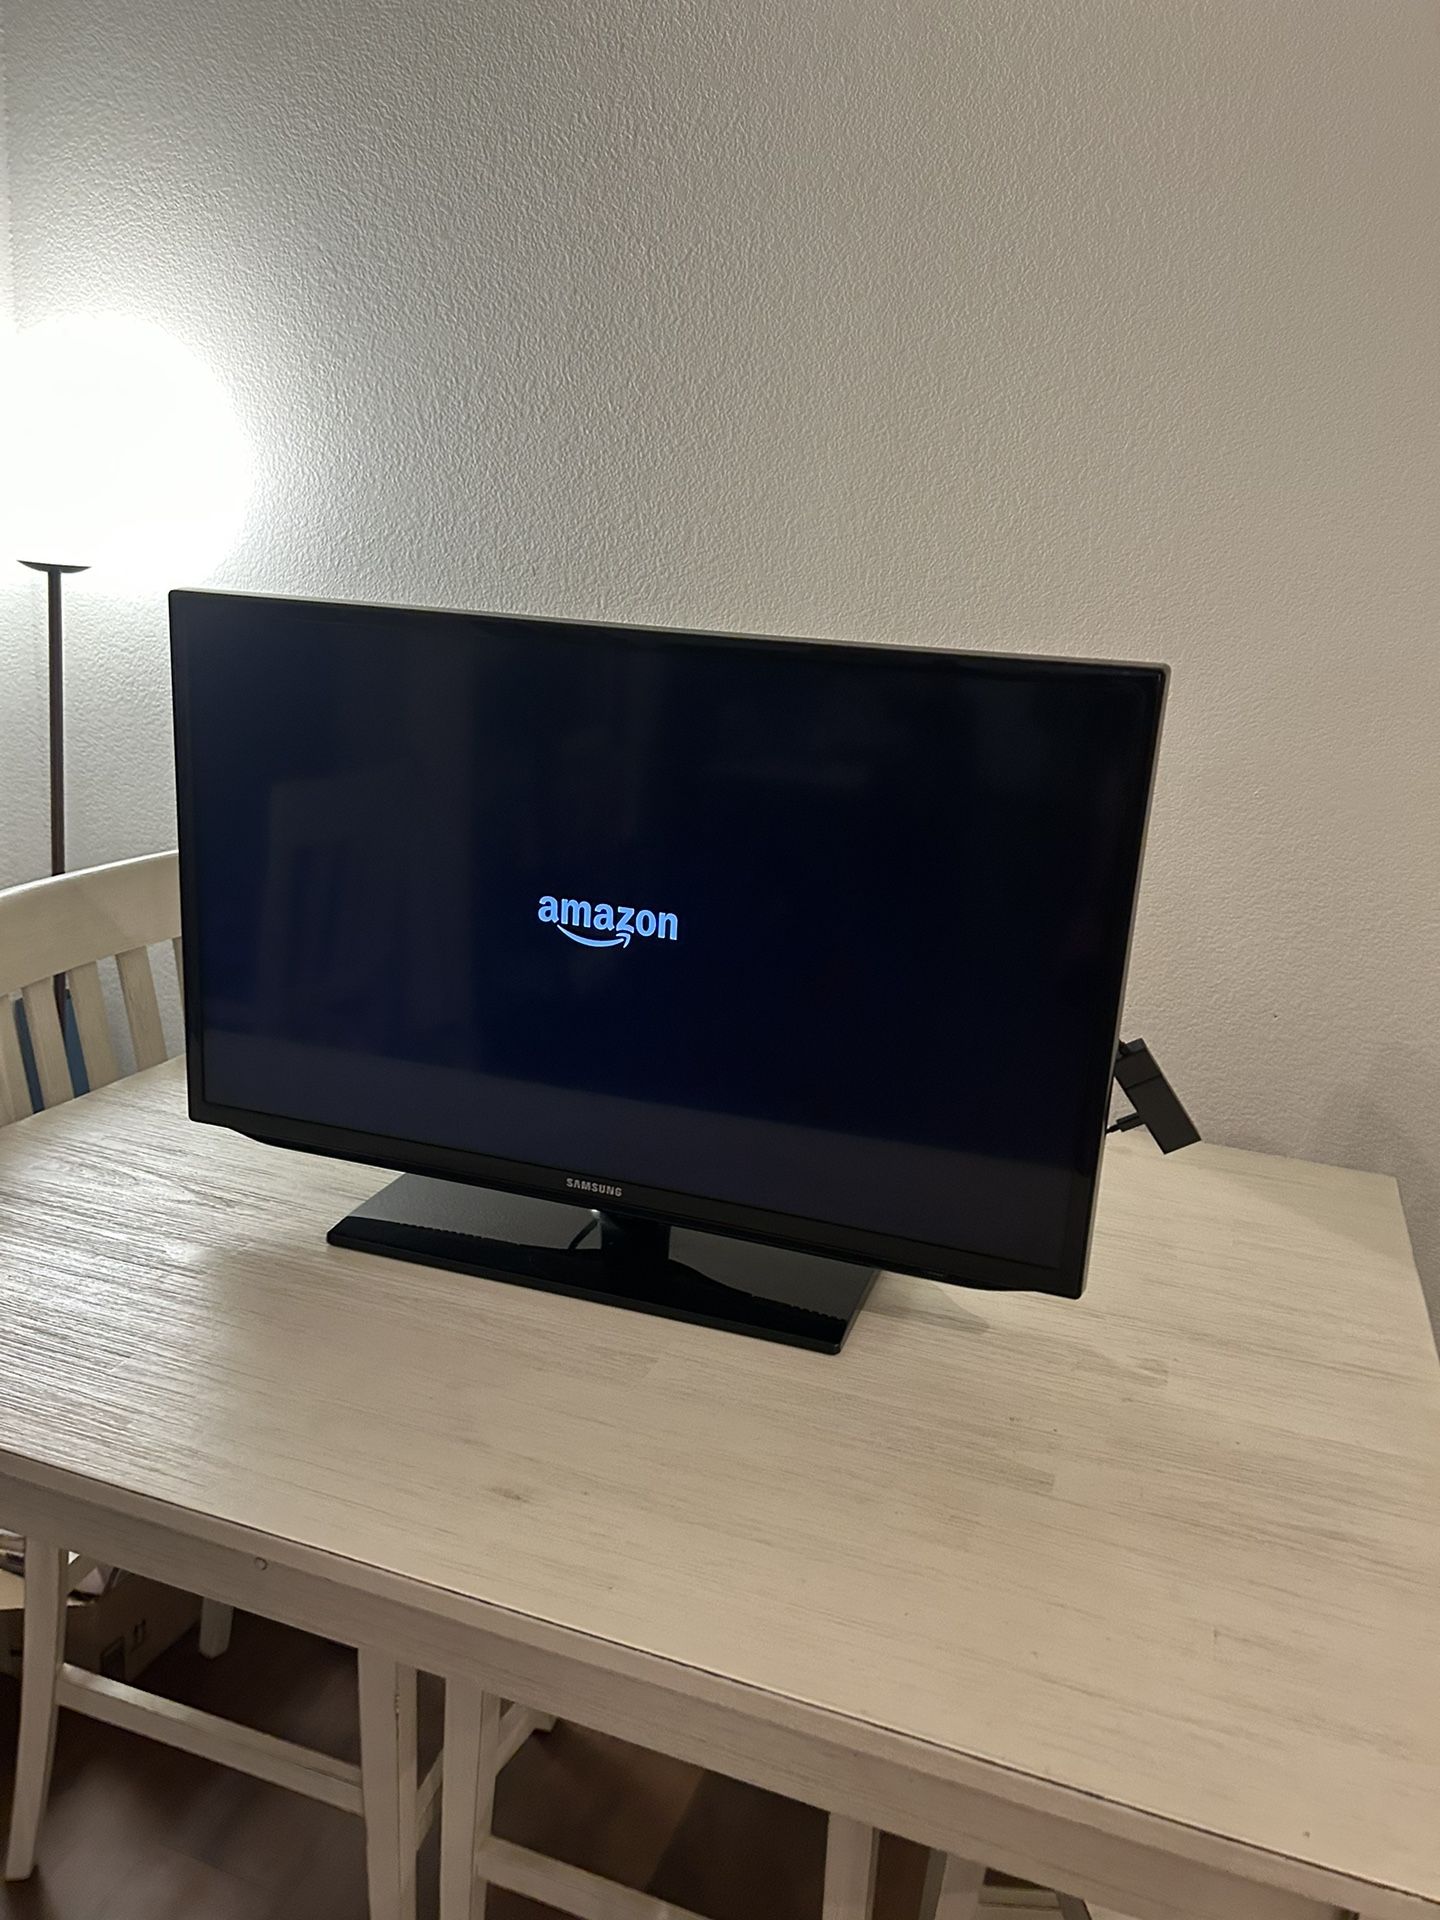 Samsung HD TV 29” - w/ HD Amazon FireStick, Remote, and HDMI cord